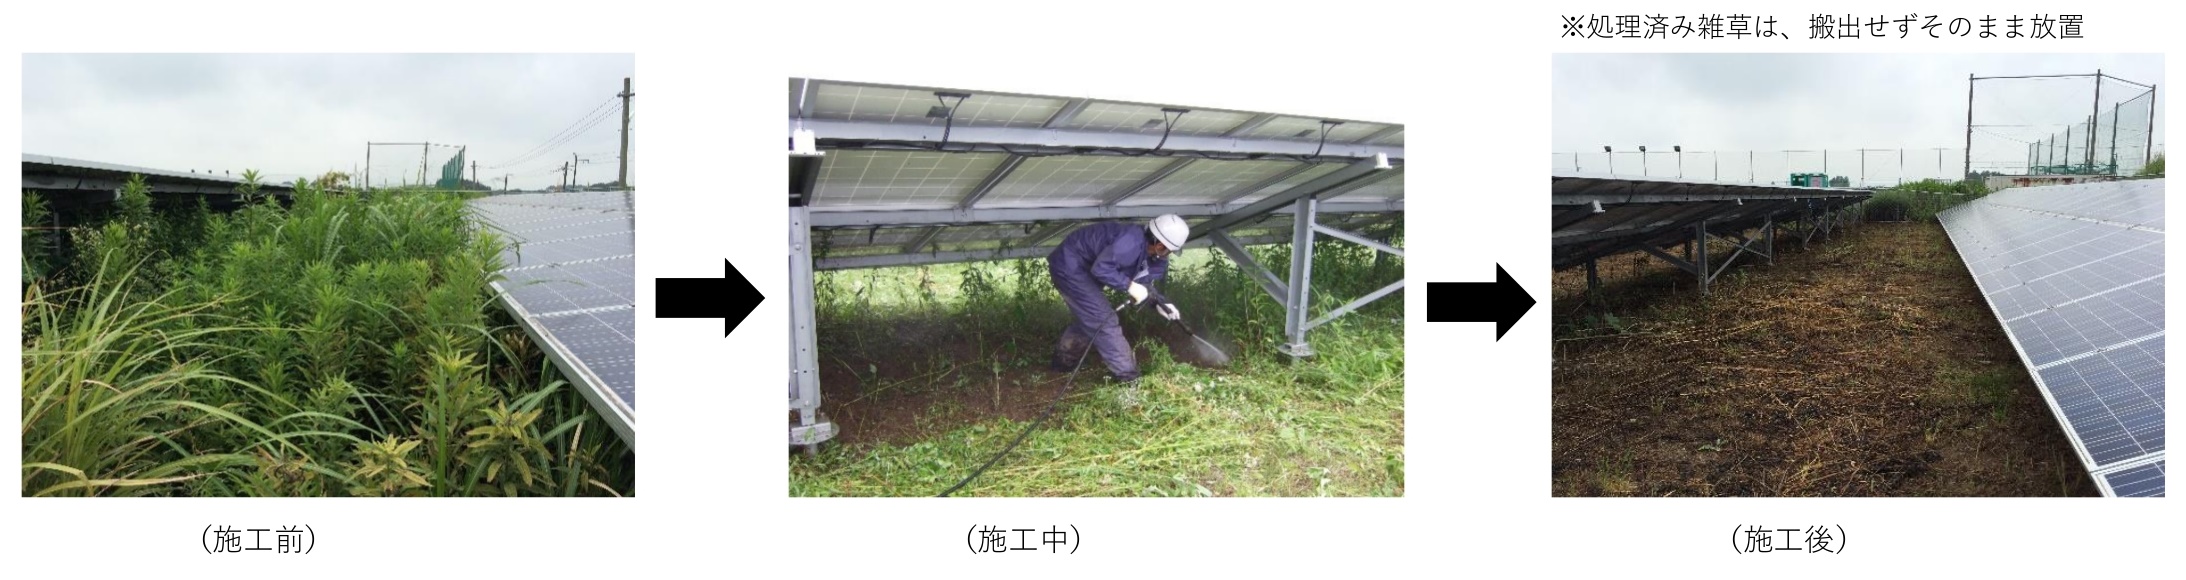 太陽光発電所サイト内画像